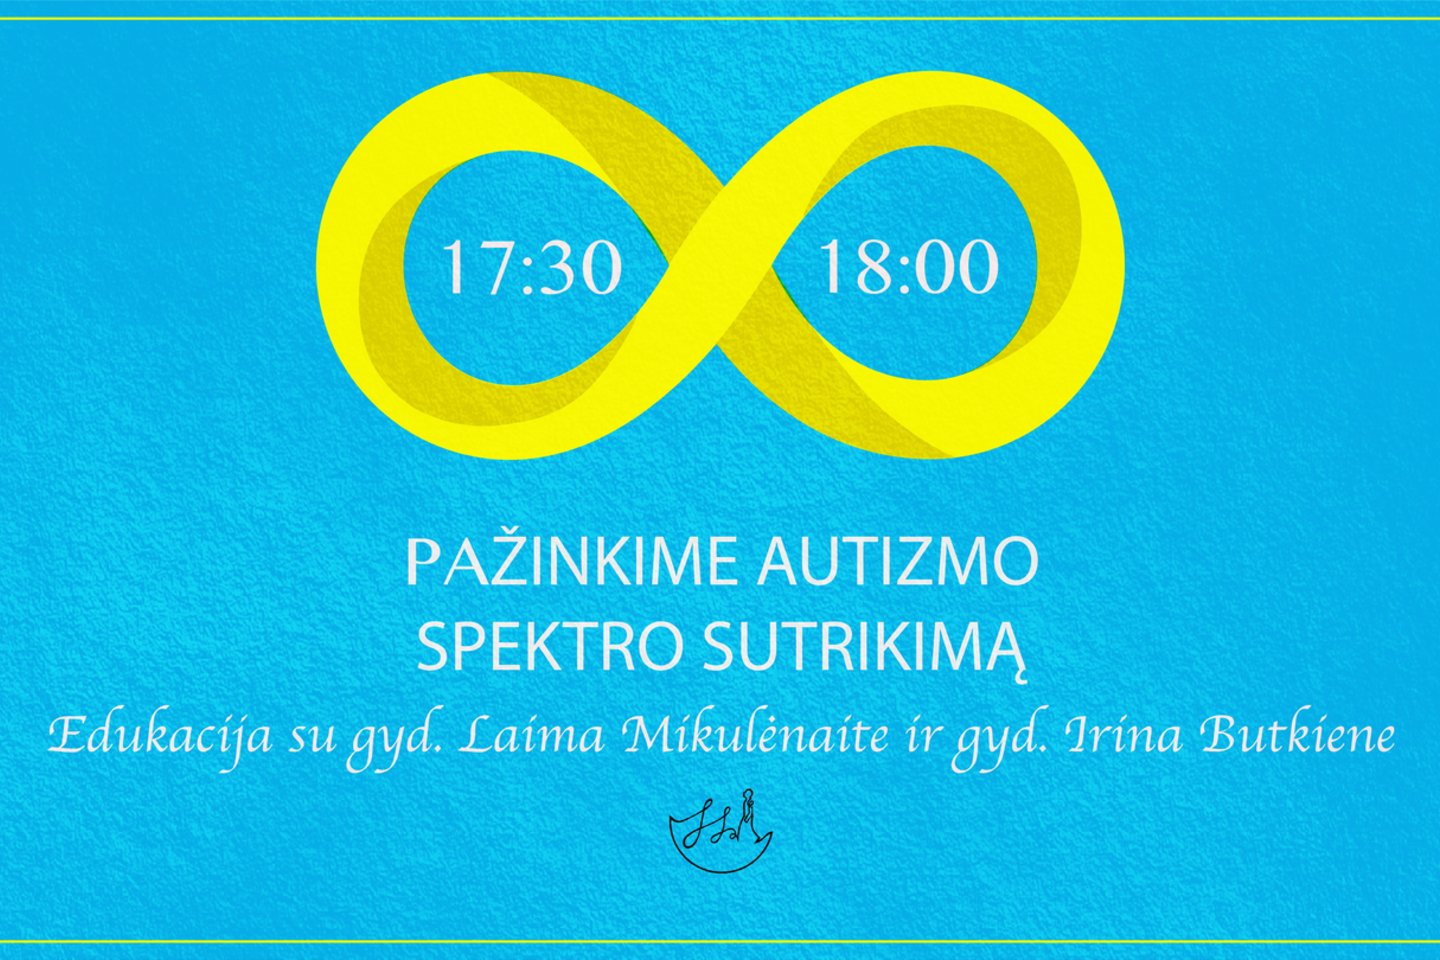  Siekdama prisidėti prie teigiamų pokyčių Lietuvos visuomenėje, iniciatyva „Skirtingos Spalvos“ kviečia geriau pažinti autizmo spektro sutrikimą.<br>Organizatorių maketai